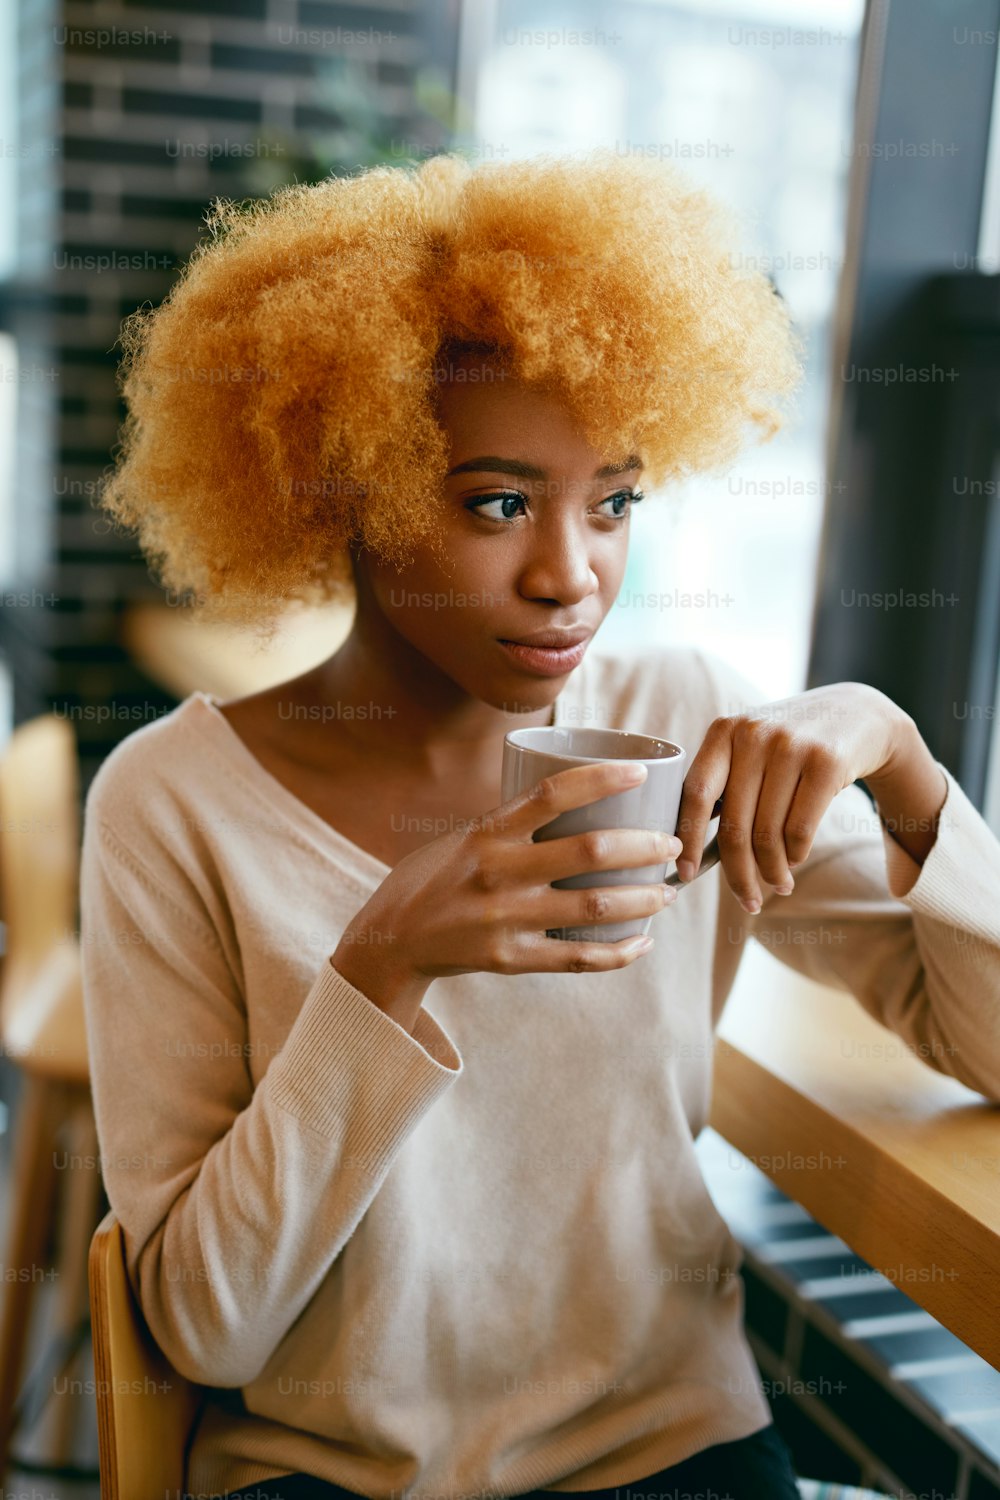 Hermosa muchacha bebiendo café bebida en el café cerca de la ventana. Retrato De Joven Mujer Africana Sonriente En Ropa Casual Con Cu0p De Bebida Caliente En El Café. Alta resolución